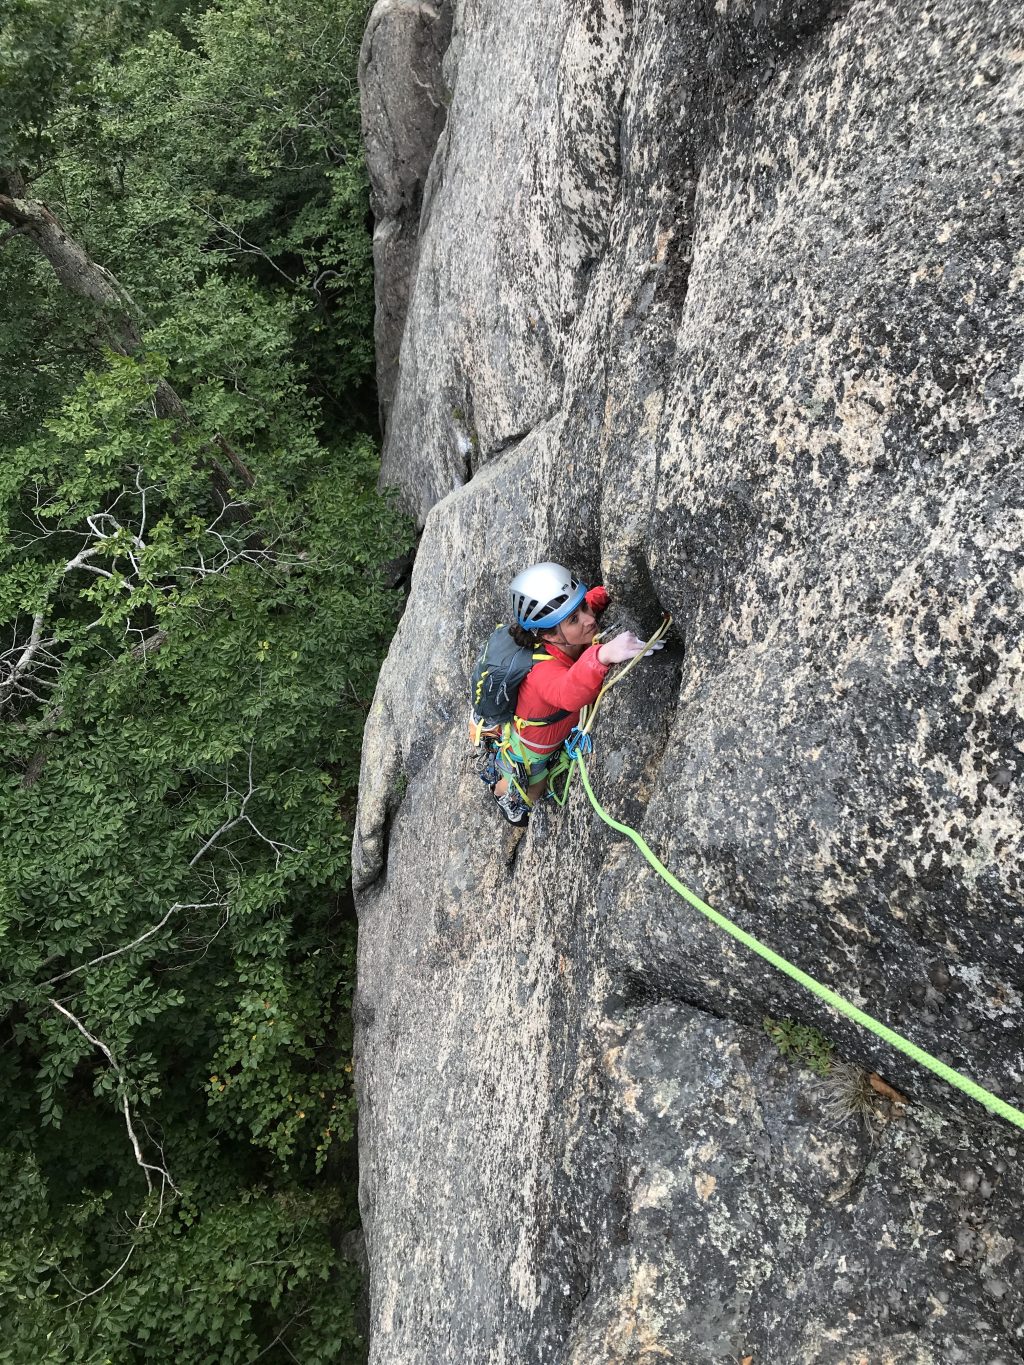 Lesser-known rock climbing destination, Mount Willard 